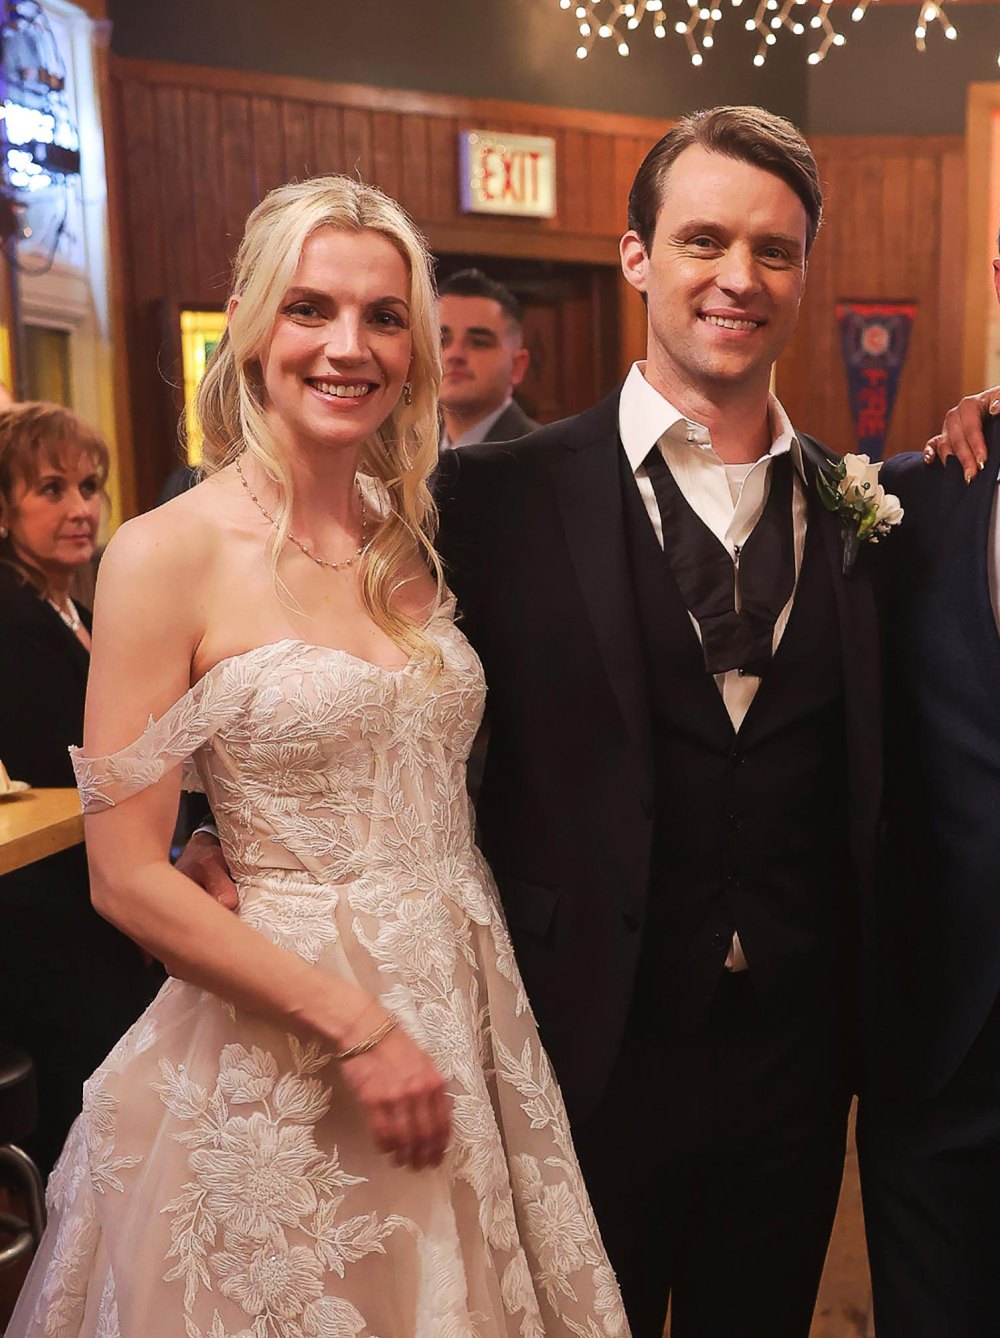 Chicago Fire Teases Kara Killmer s Last Episode 1st Look at Sylvie Brett and Matt Casey s Wedding 862